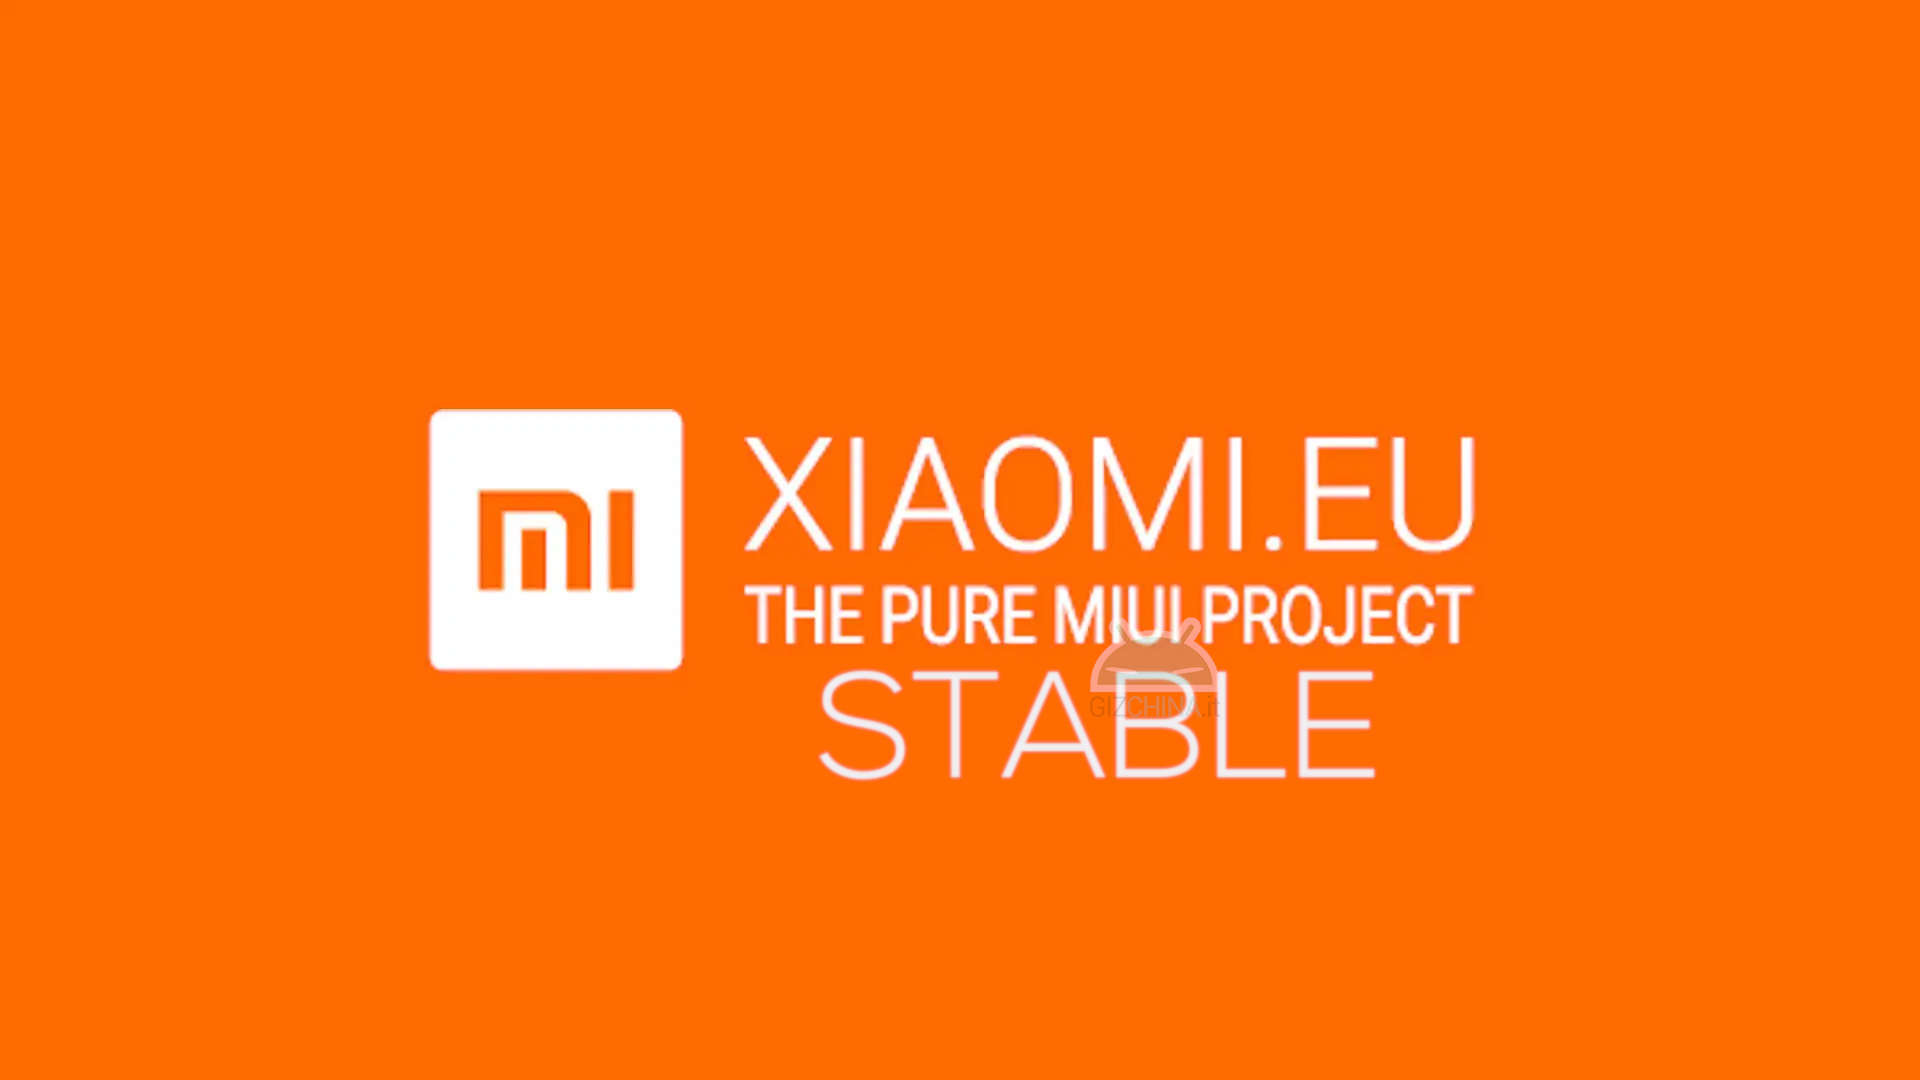 Xiaomi eu ru. Xiaomi eu. MIUI eu. Проект Xiaomi. Xiaomi eu stable.